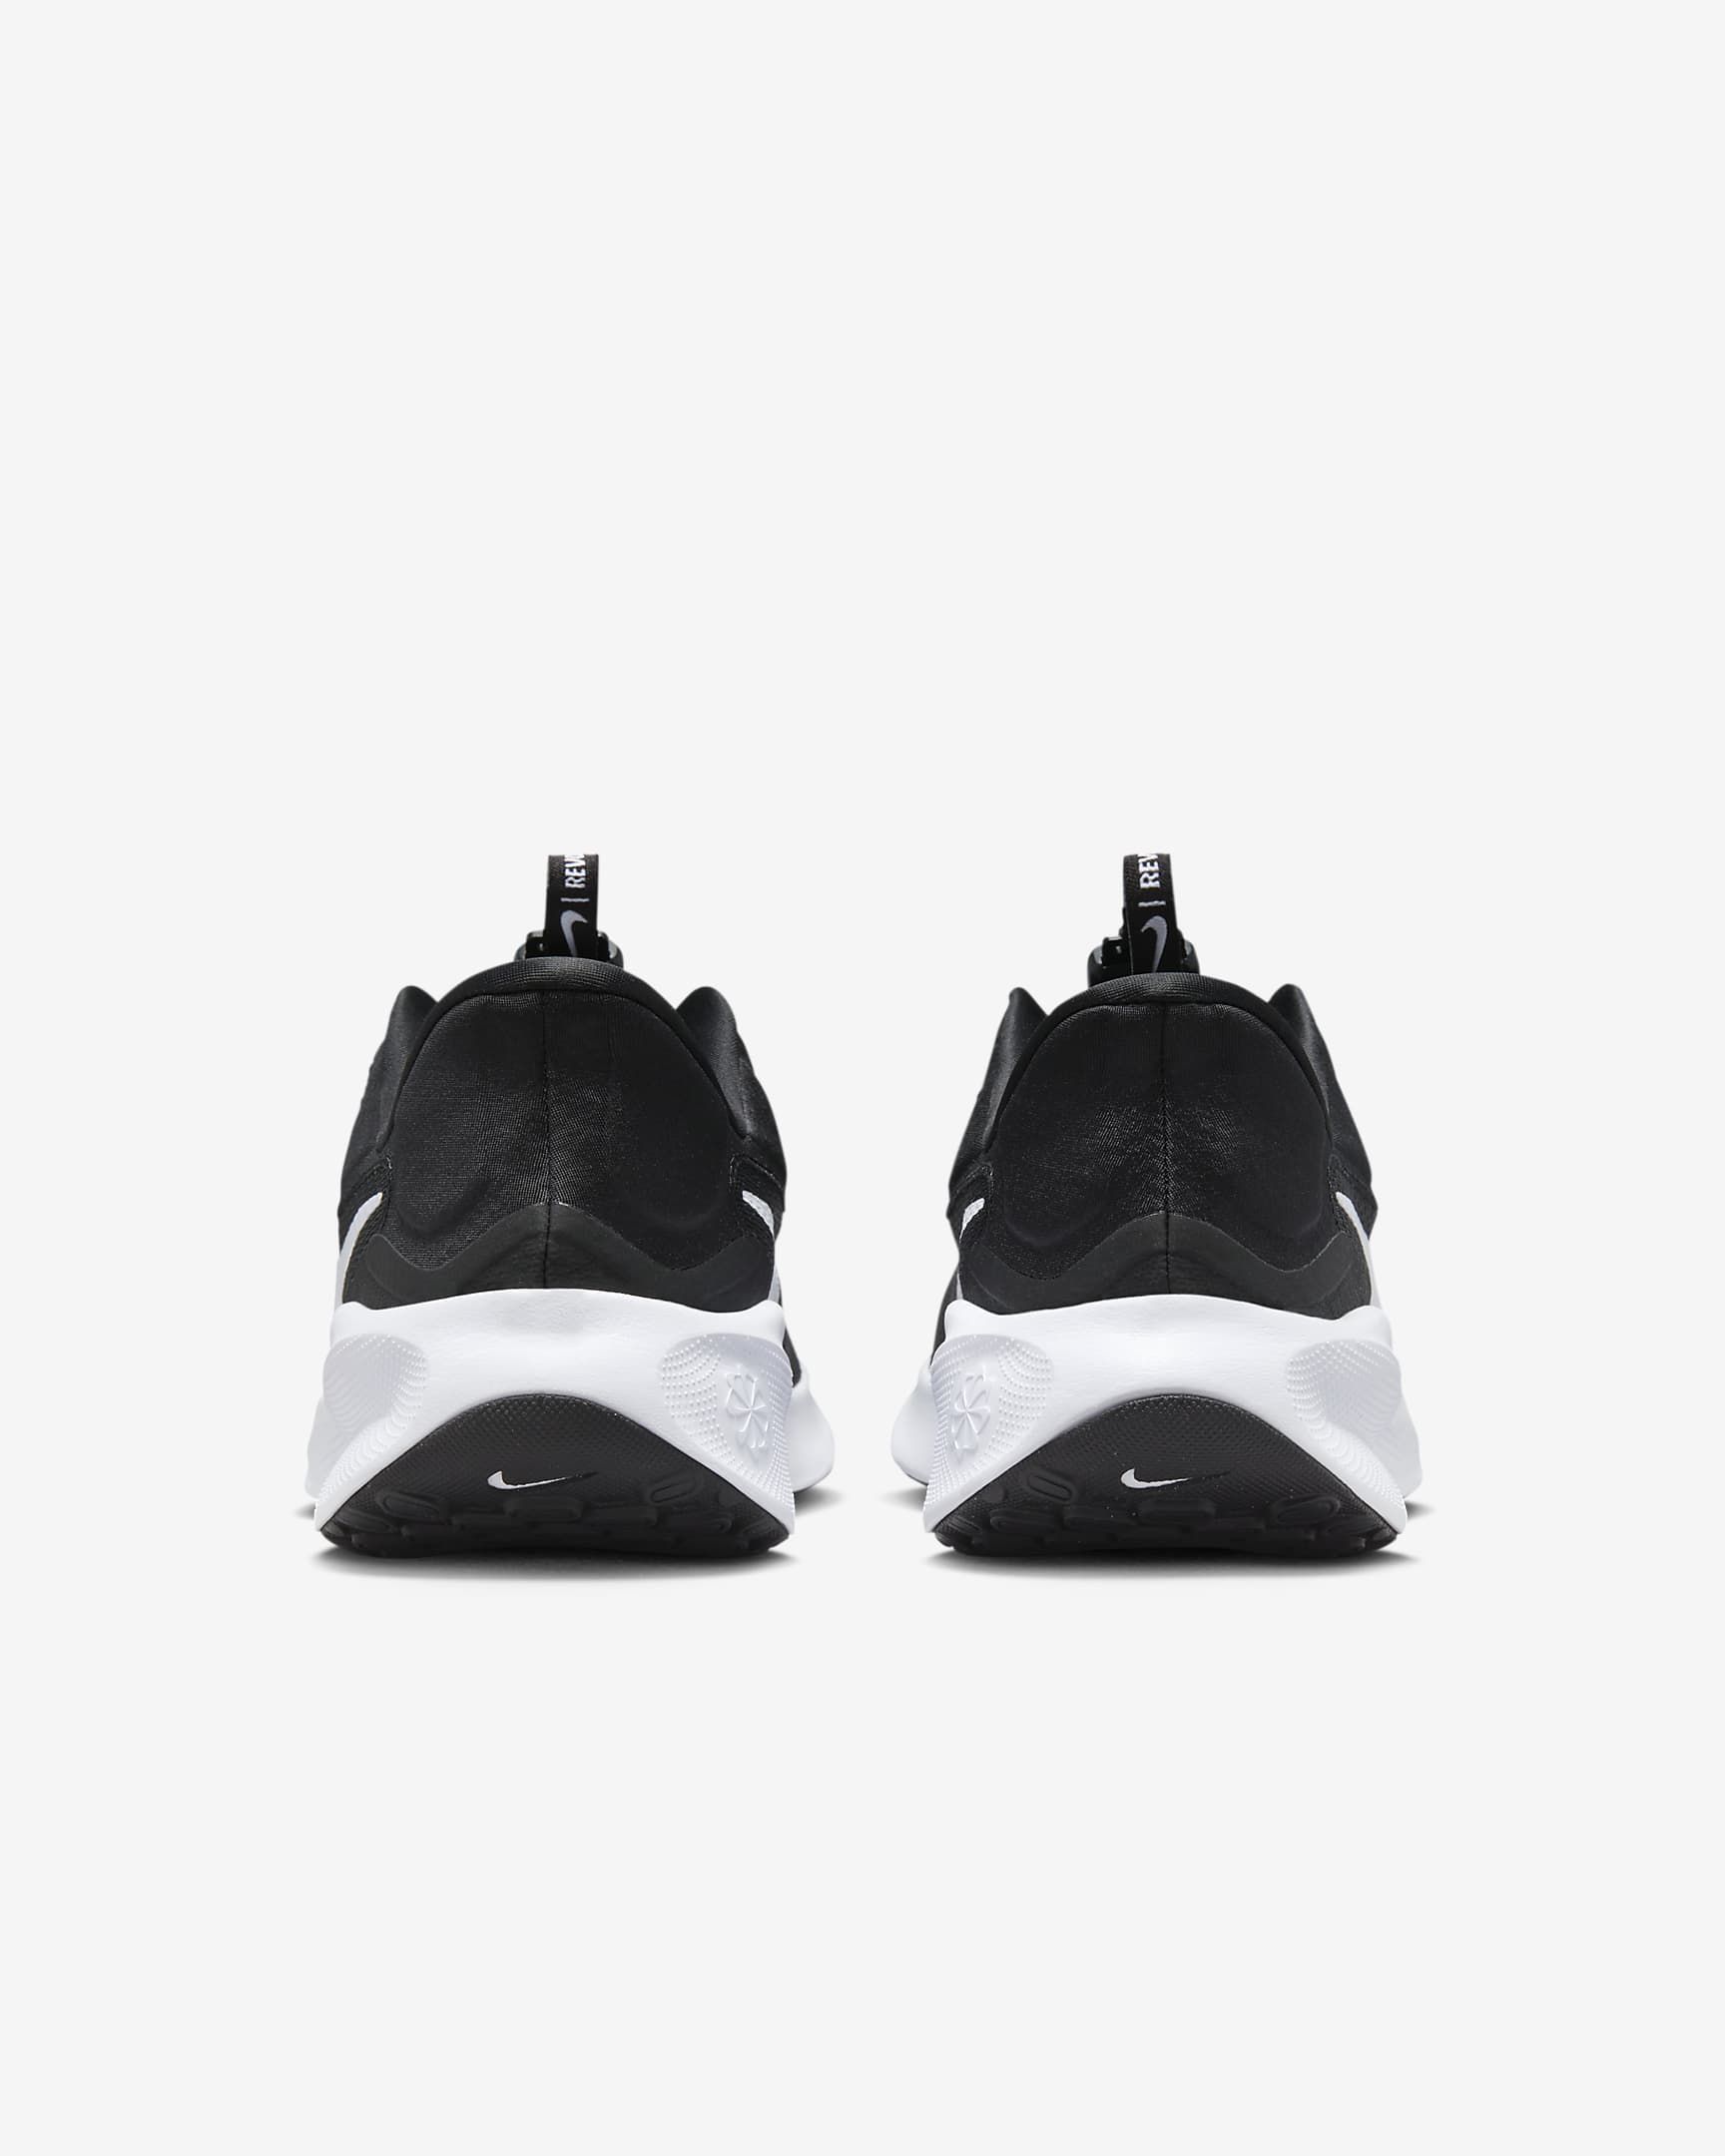 Chaussure de running sur route Nike Revolution 7 EasyOn pour homme - Noir/Blanc